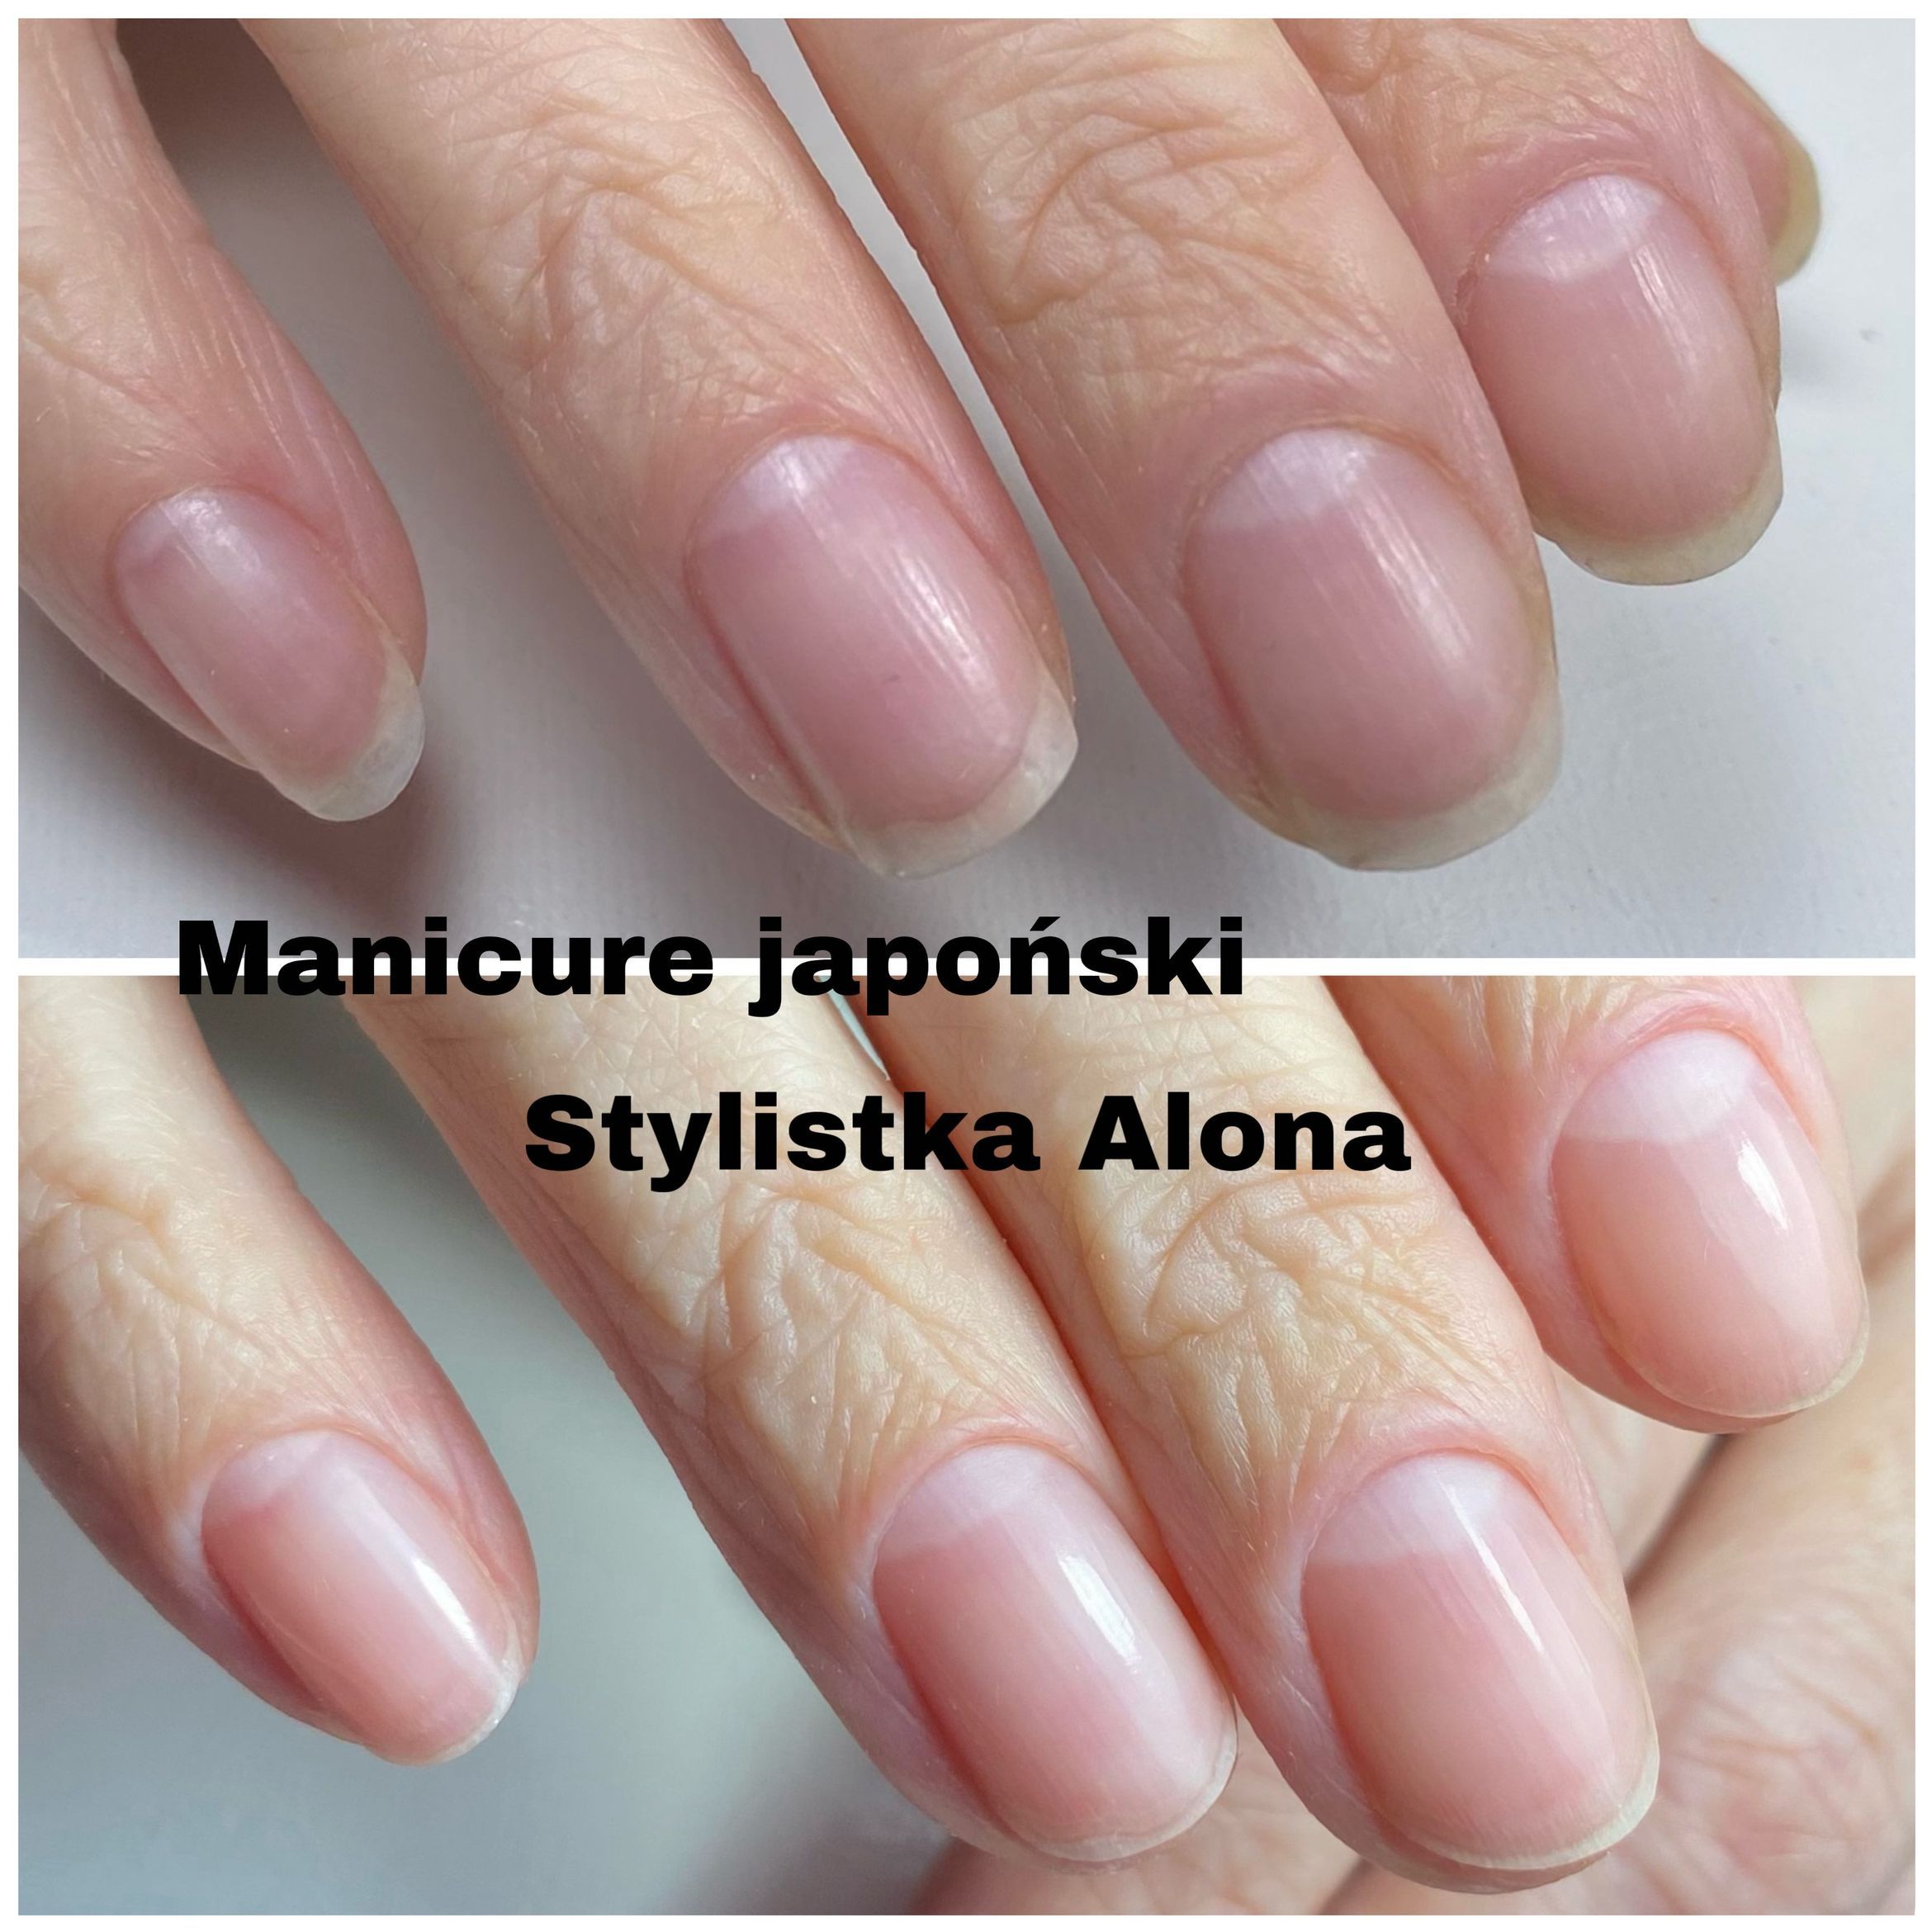 Portfolio usługi Manicure japoński